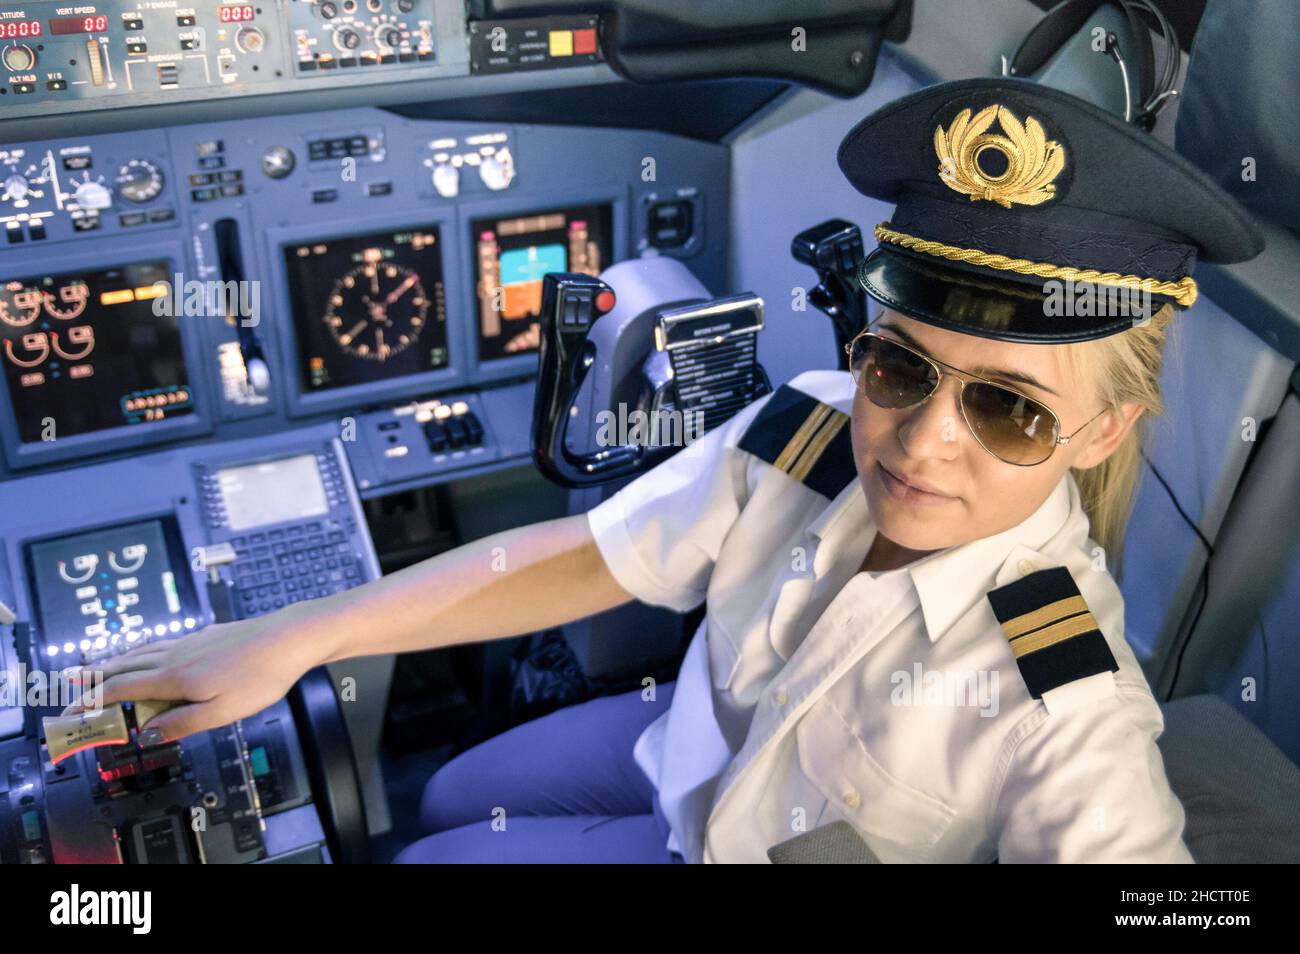 Bella donna bionda pilota indossando uniforme e cappello con ali dorate - moderno cockpit aereo pronto per il decollo Foto Stock